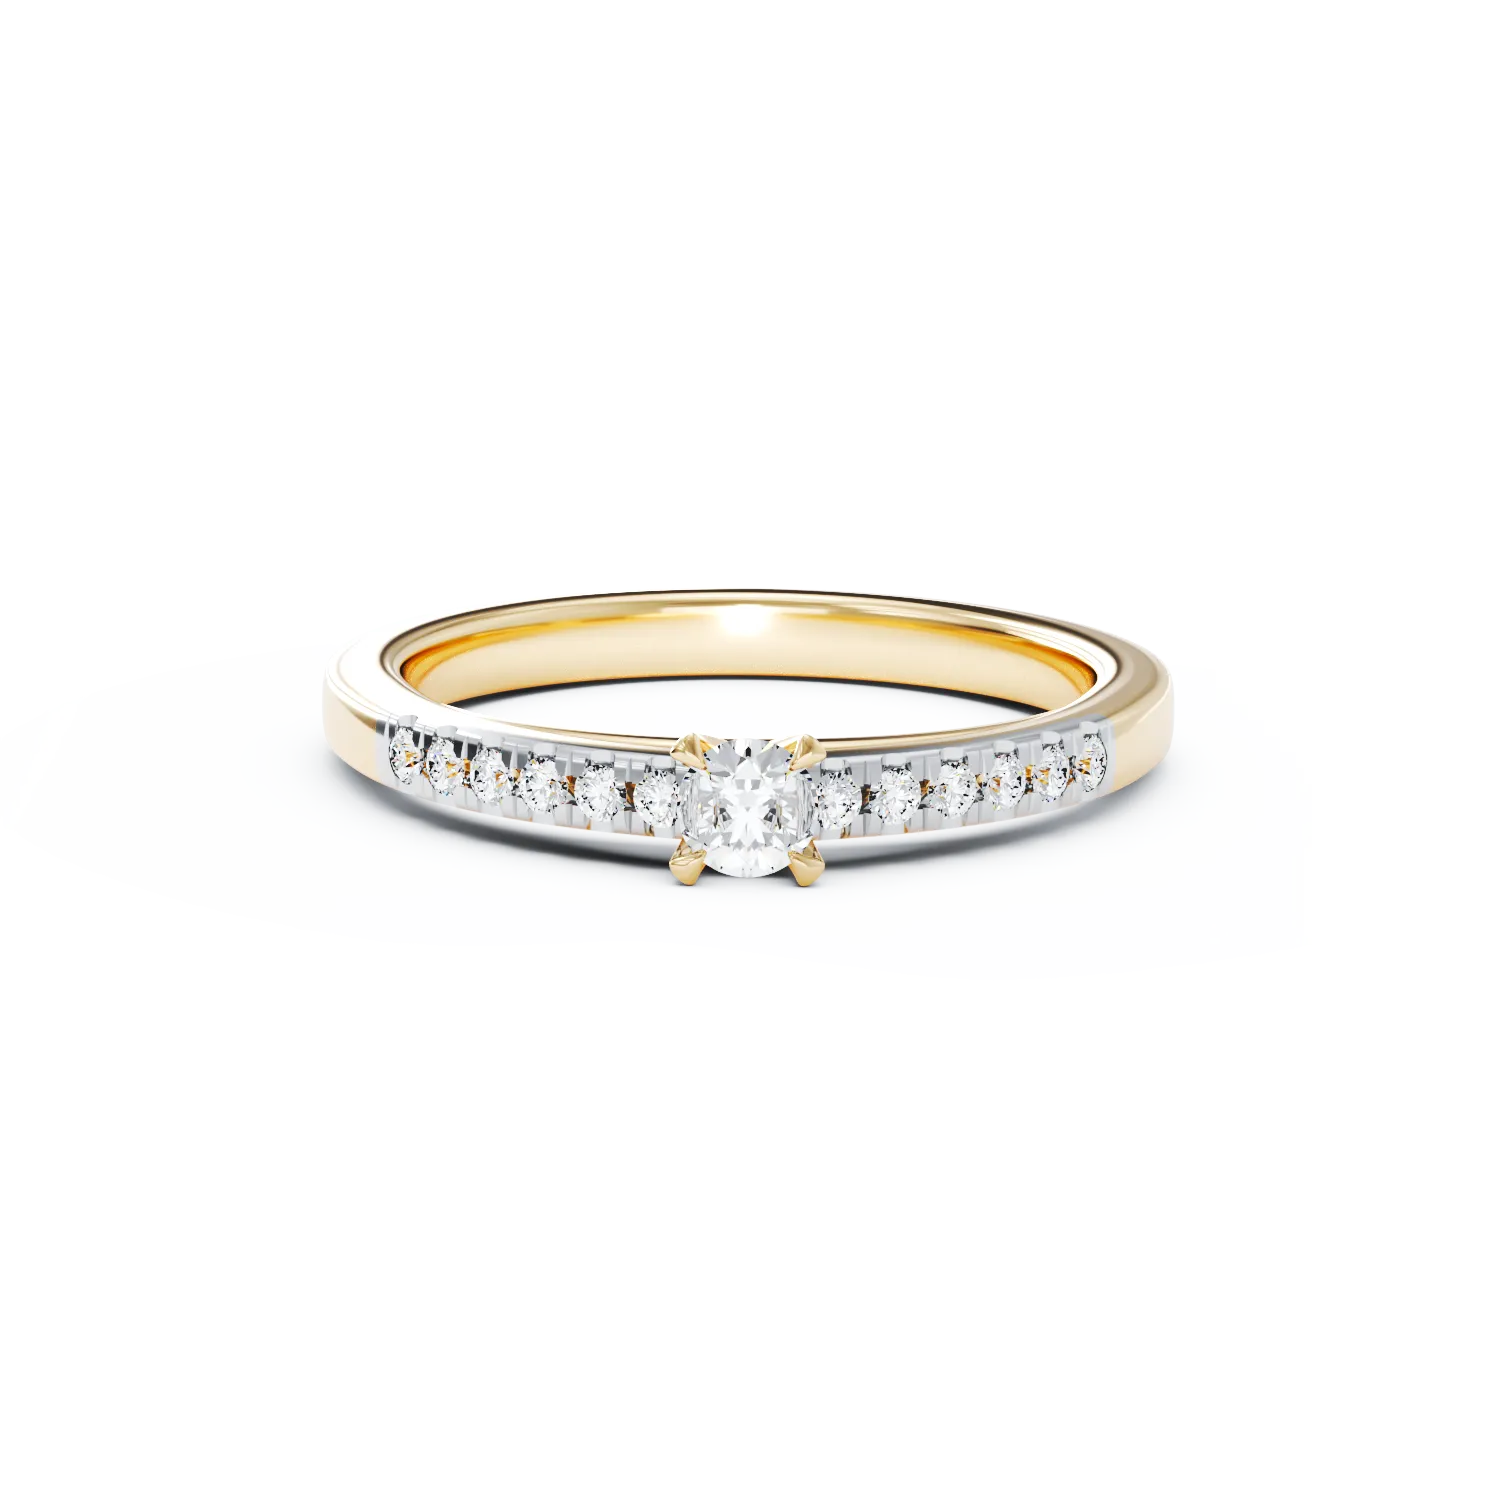 Eljegyzési gyűrű 18K-os sárga aranyból 0,305ct gyémánttal és 0,125ct gyémánttal. Gramm: 3,3